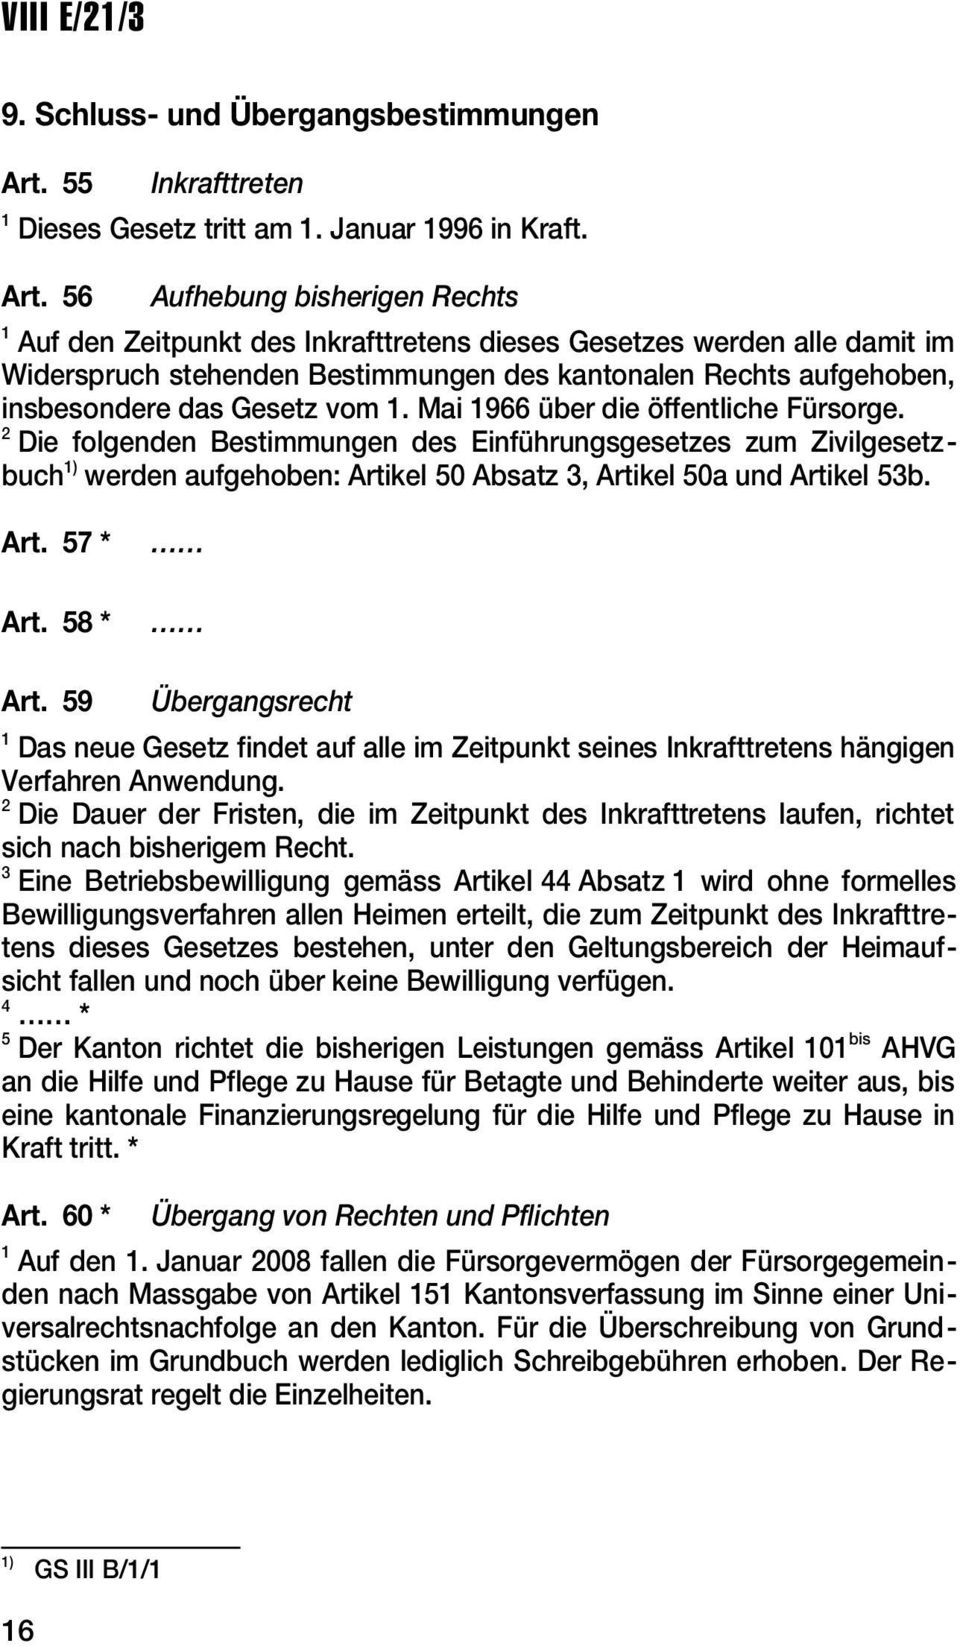 56 Aufhebung bisherigen Rechts 1 Auf den Zeitpunkt des Inkrafttretens dieses Gesetzes werden alle damit im Widerspruch stehenden Bestimmungen des kantonalen Rechts aufgehoben, insbesondere das Gesetz